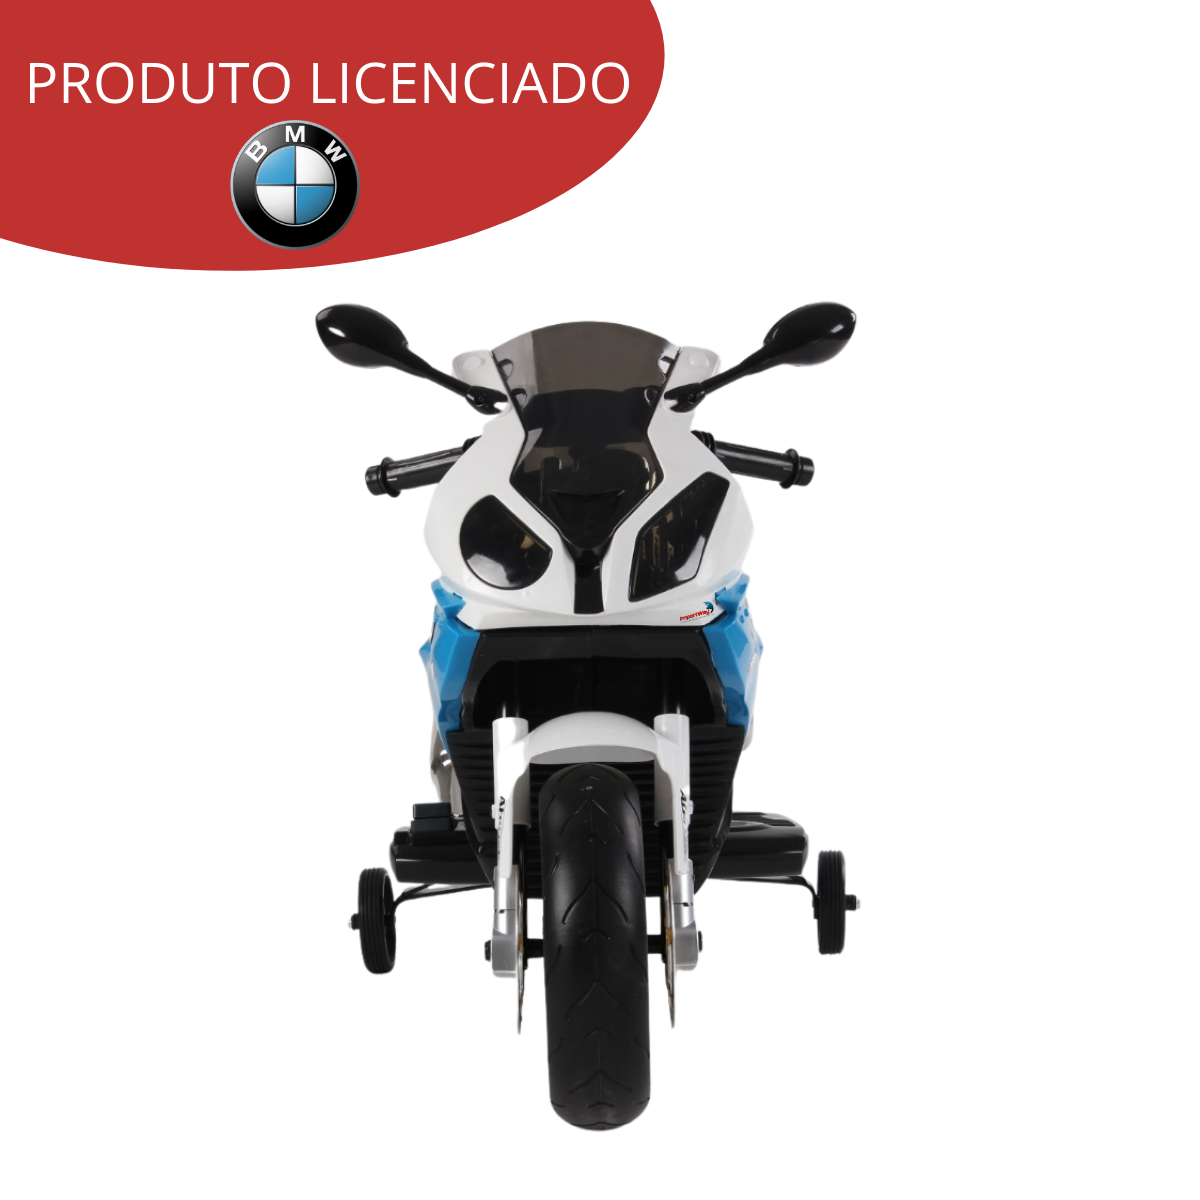 Moto Elétrica Infantil 12v BMW S1000RR Azul - Importway (BW179)